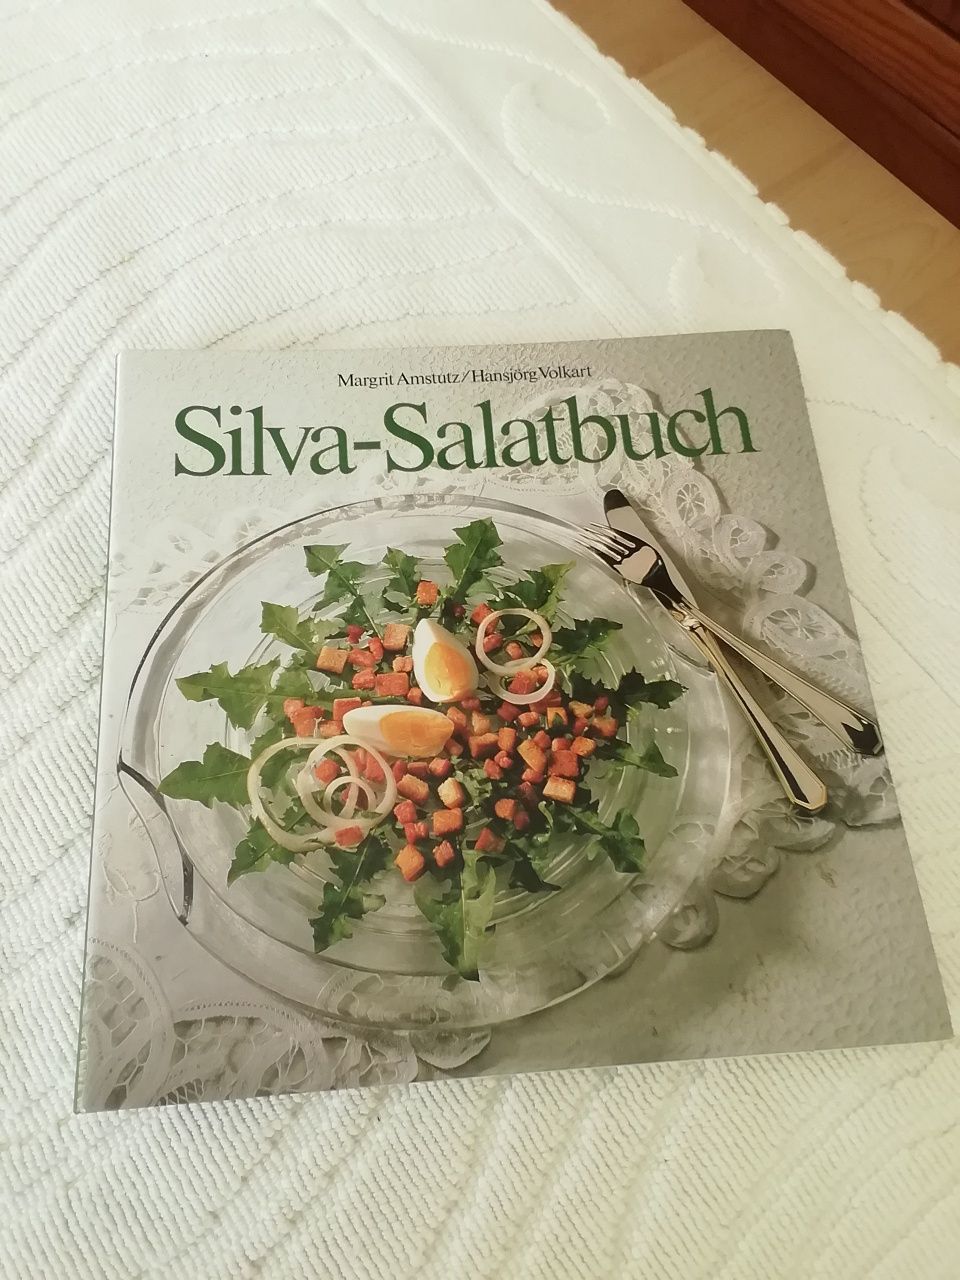 Silva-Salatbuch de 1989, usado